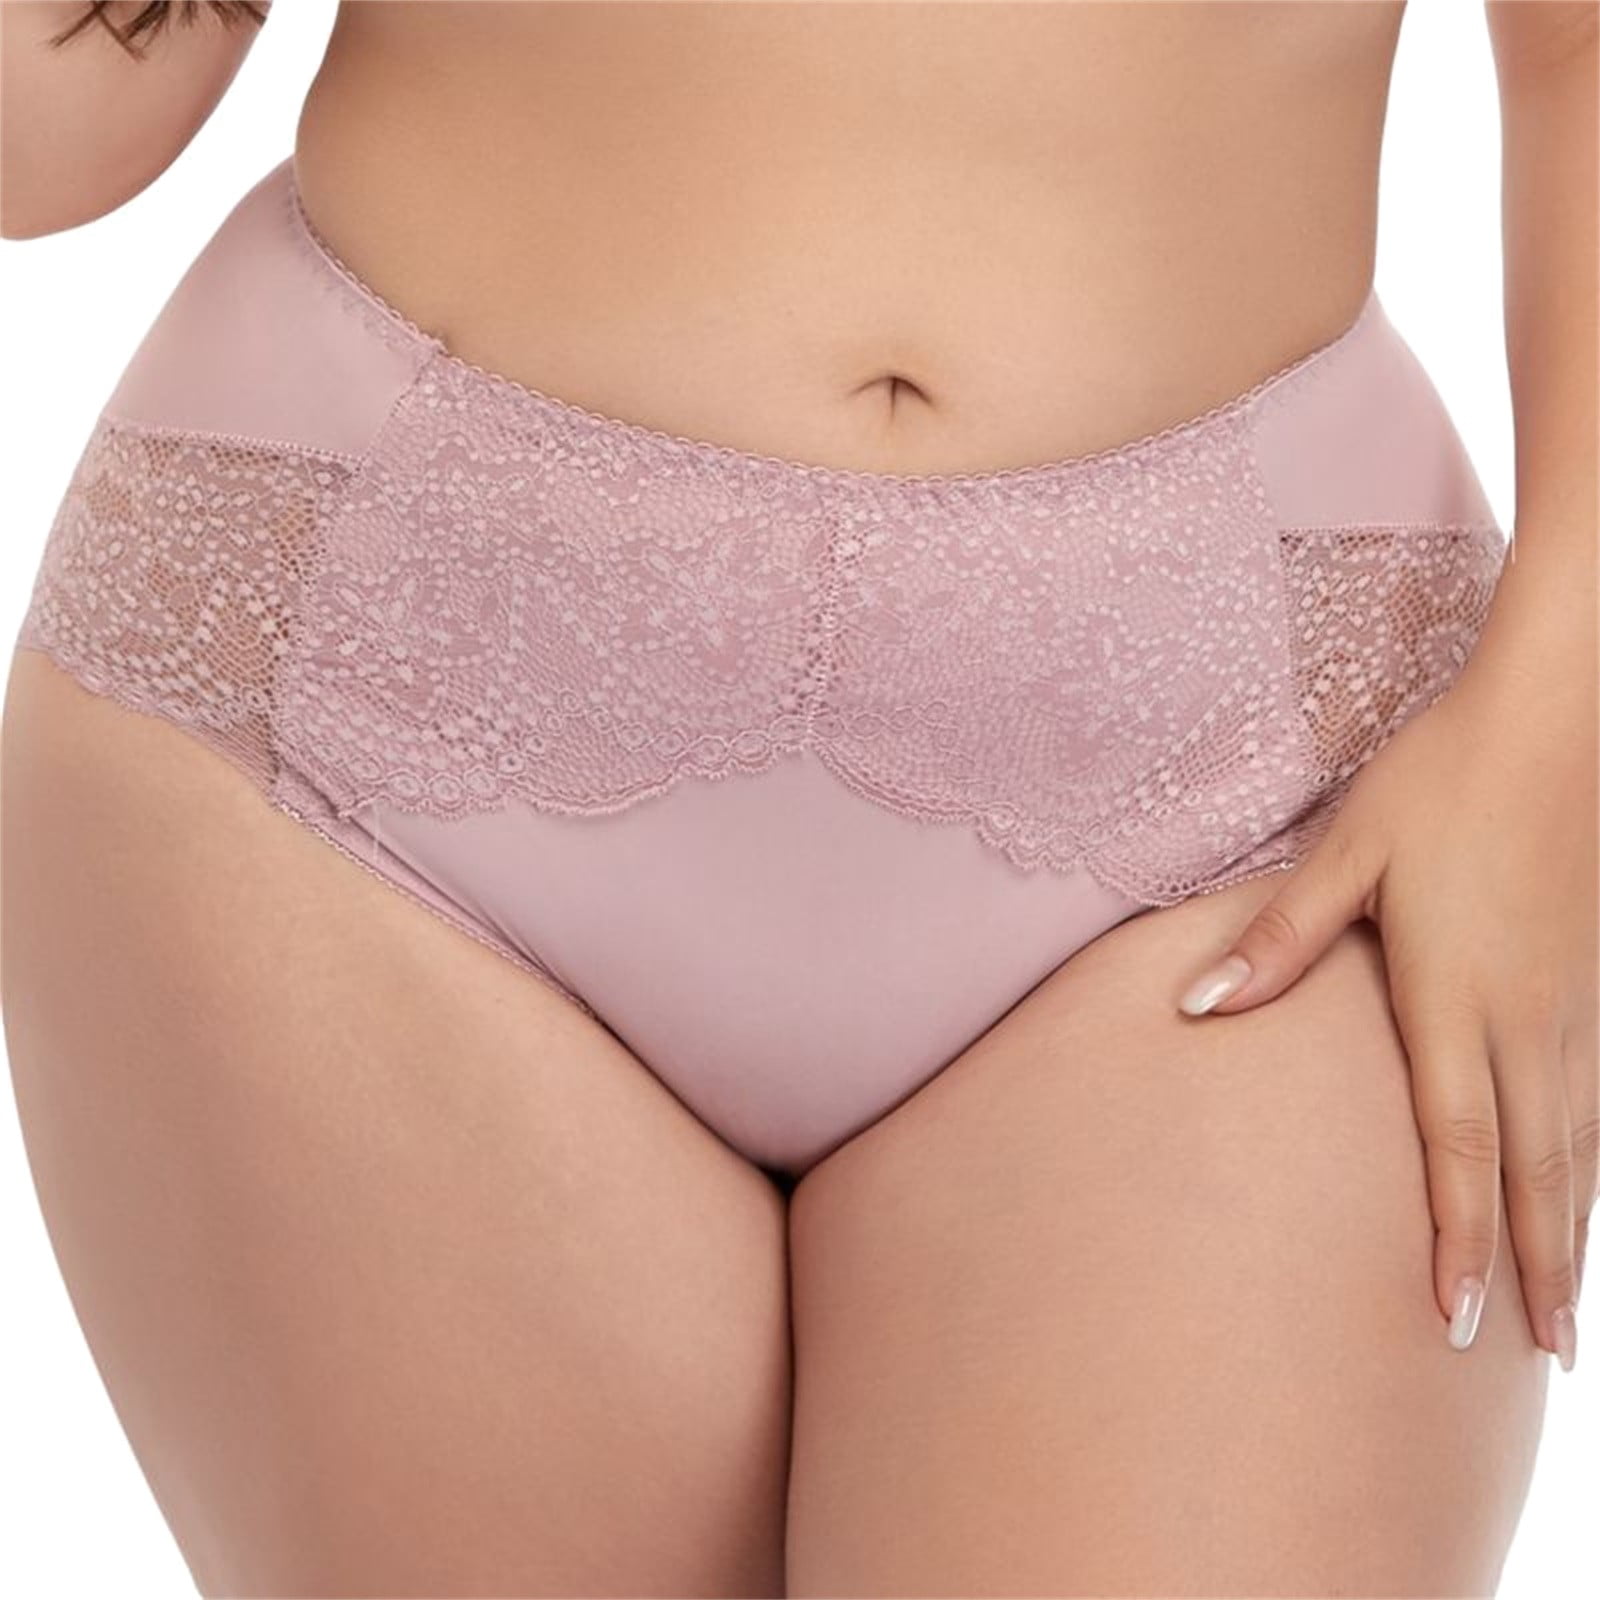 PMUYBHF Womens Cotton Underwear Briefs New Lace Underwear Large